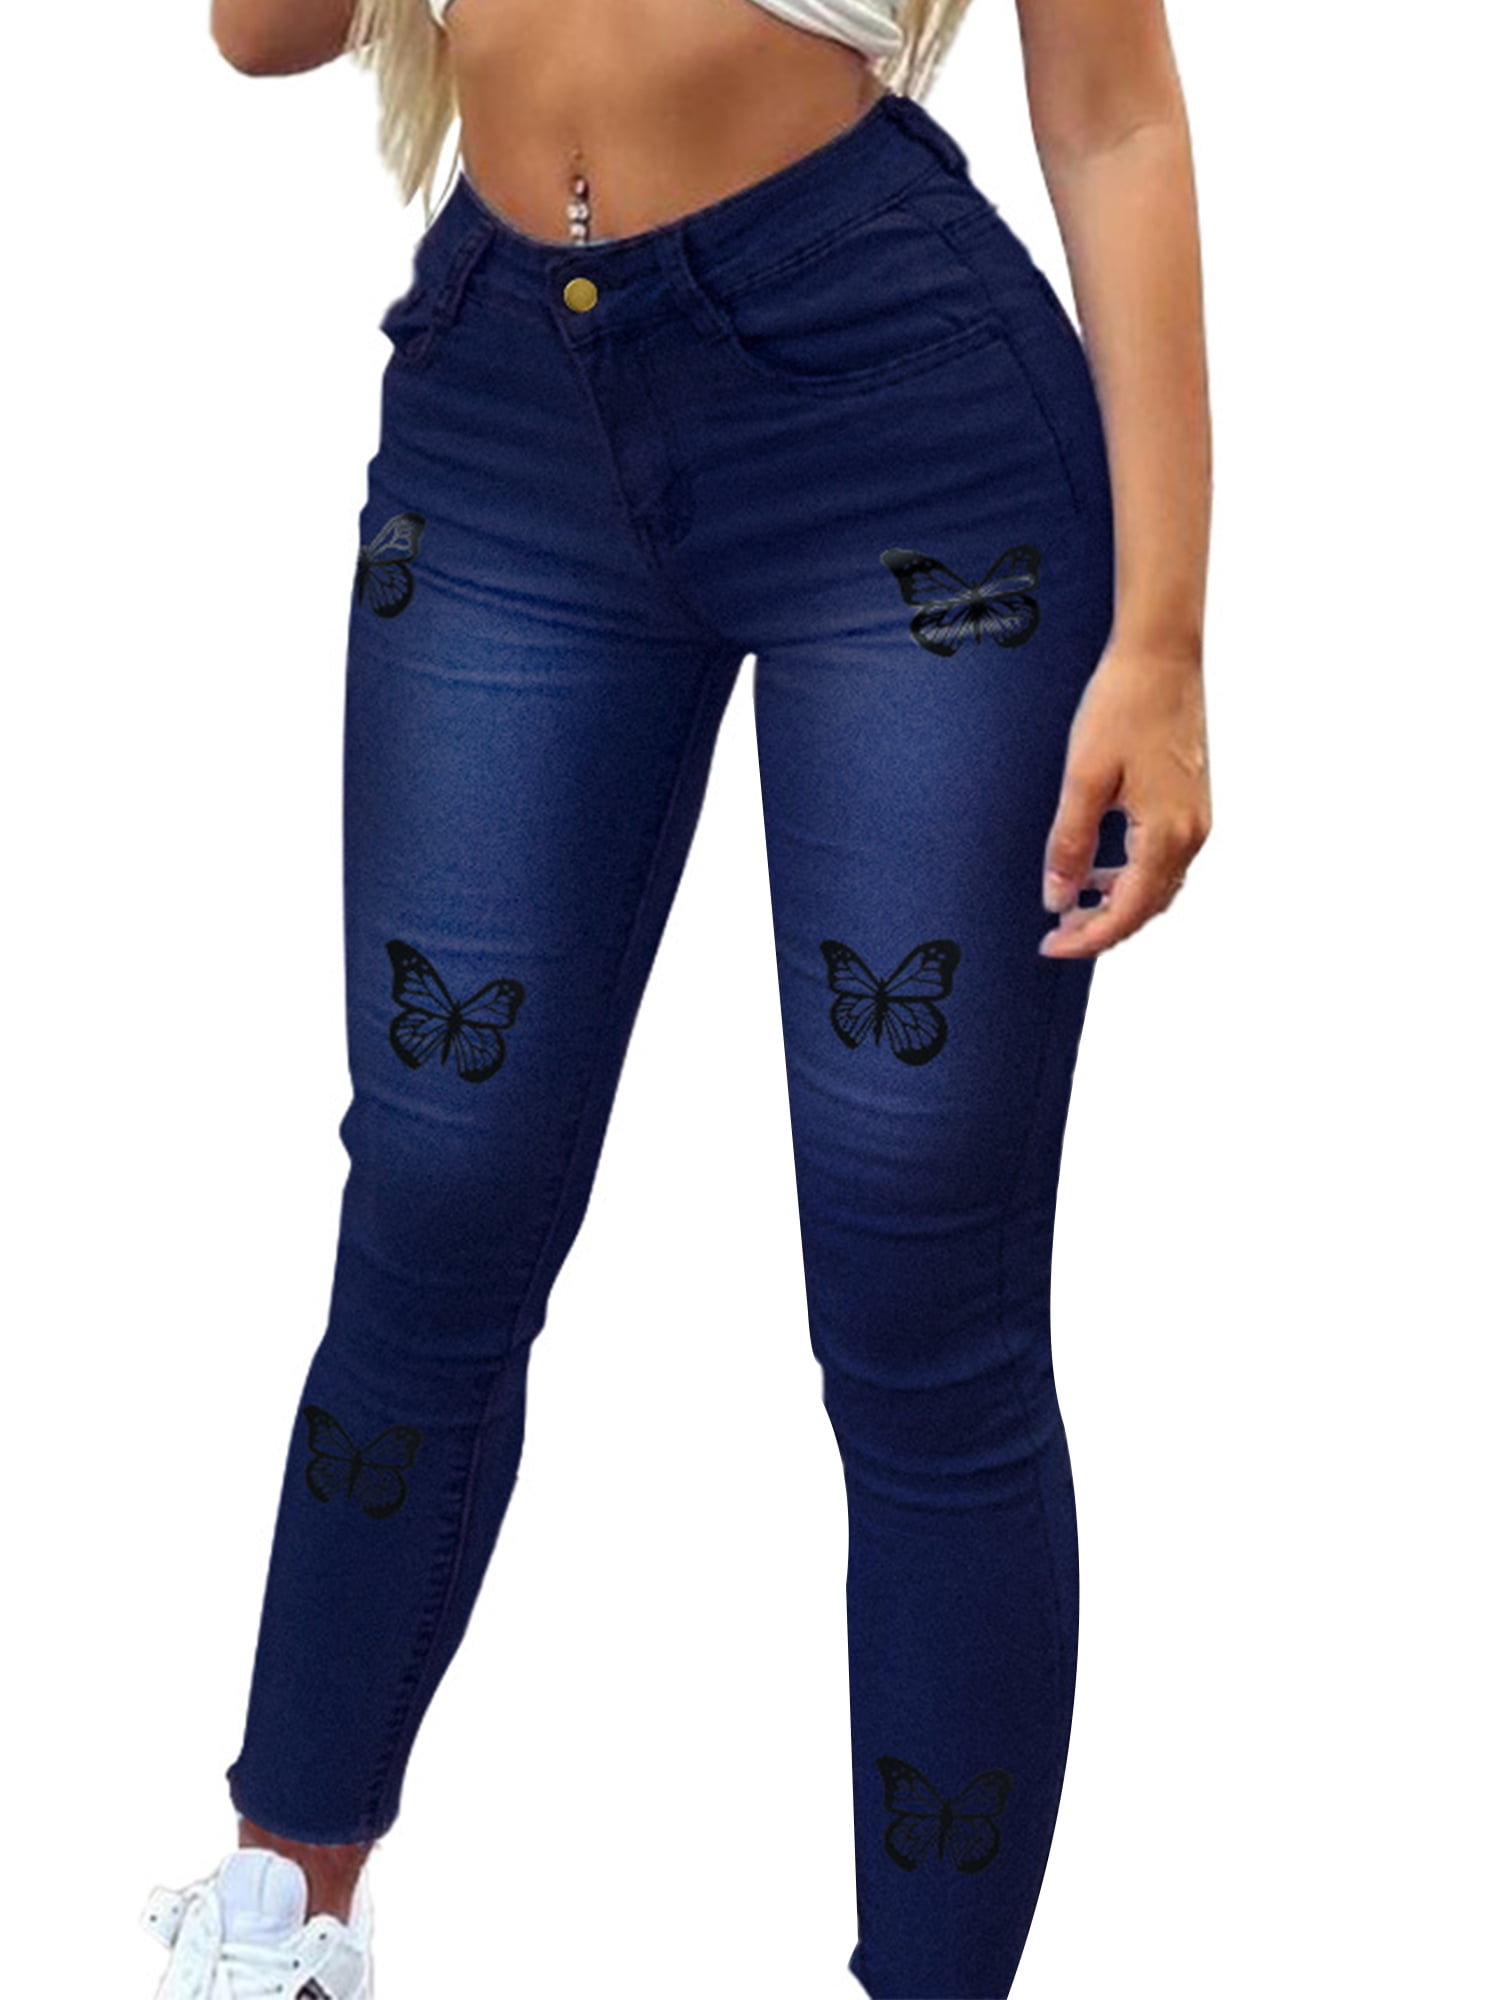 Grianlook Womens Jeans Cute Graphic Print Denim Pants Slim Skinny